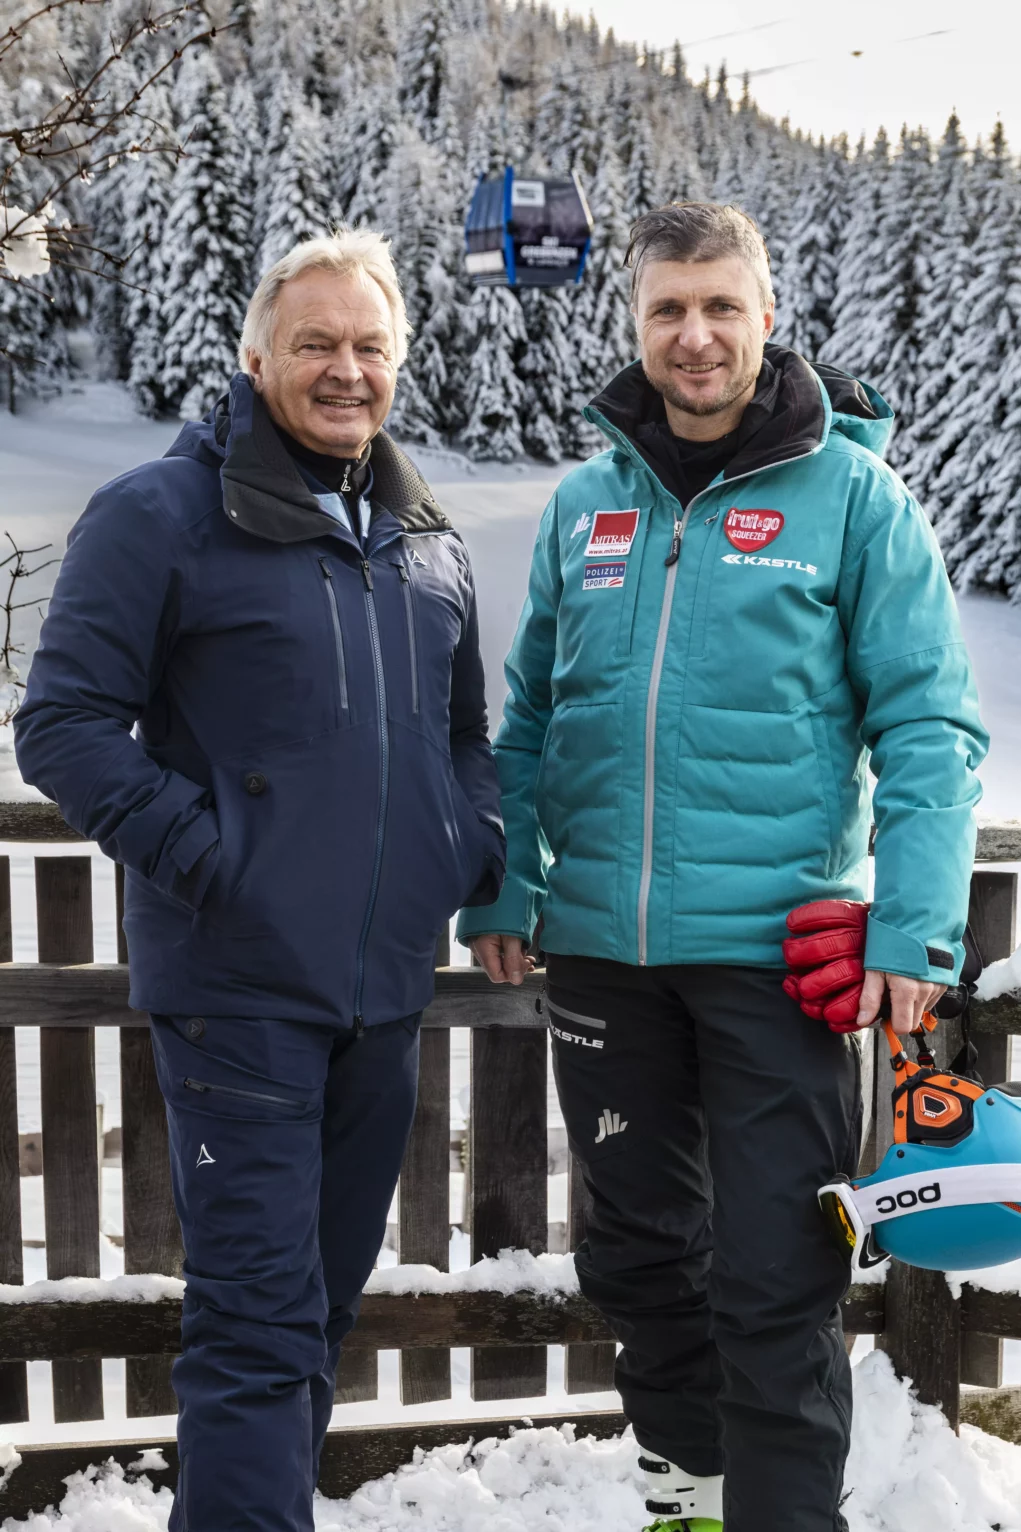 Skigebiet Grebenzen startet mit zwei Pisten-Neuheiten in die Saison